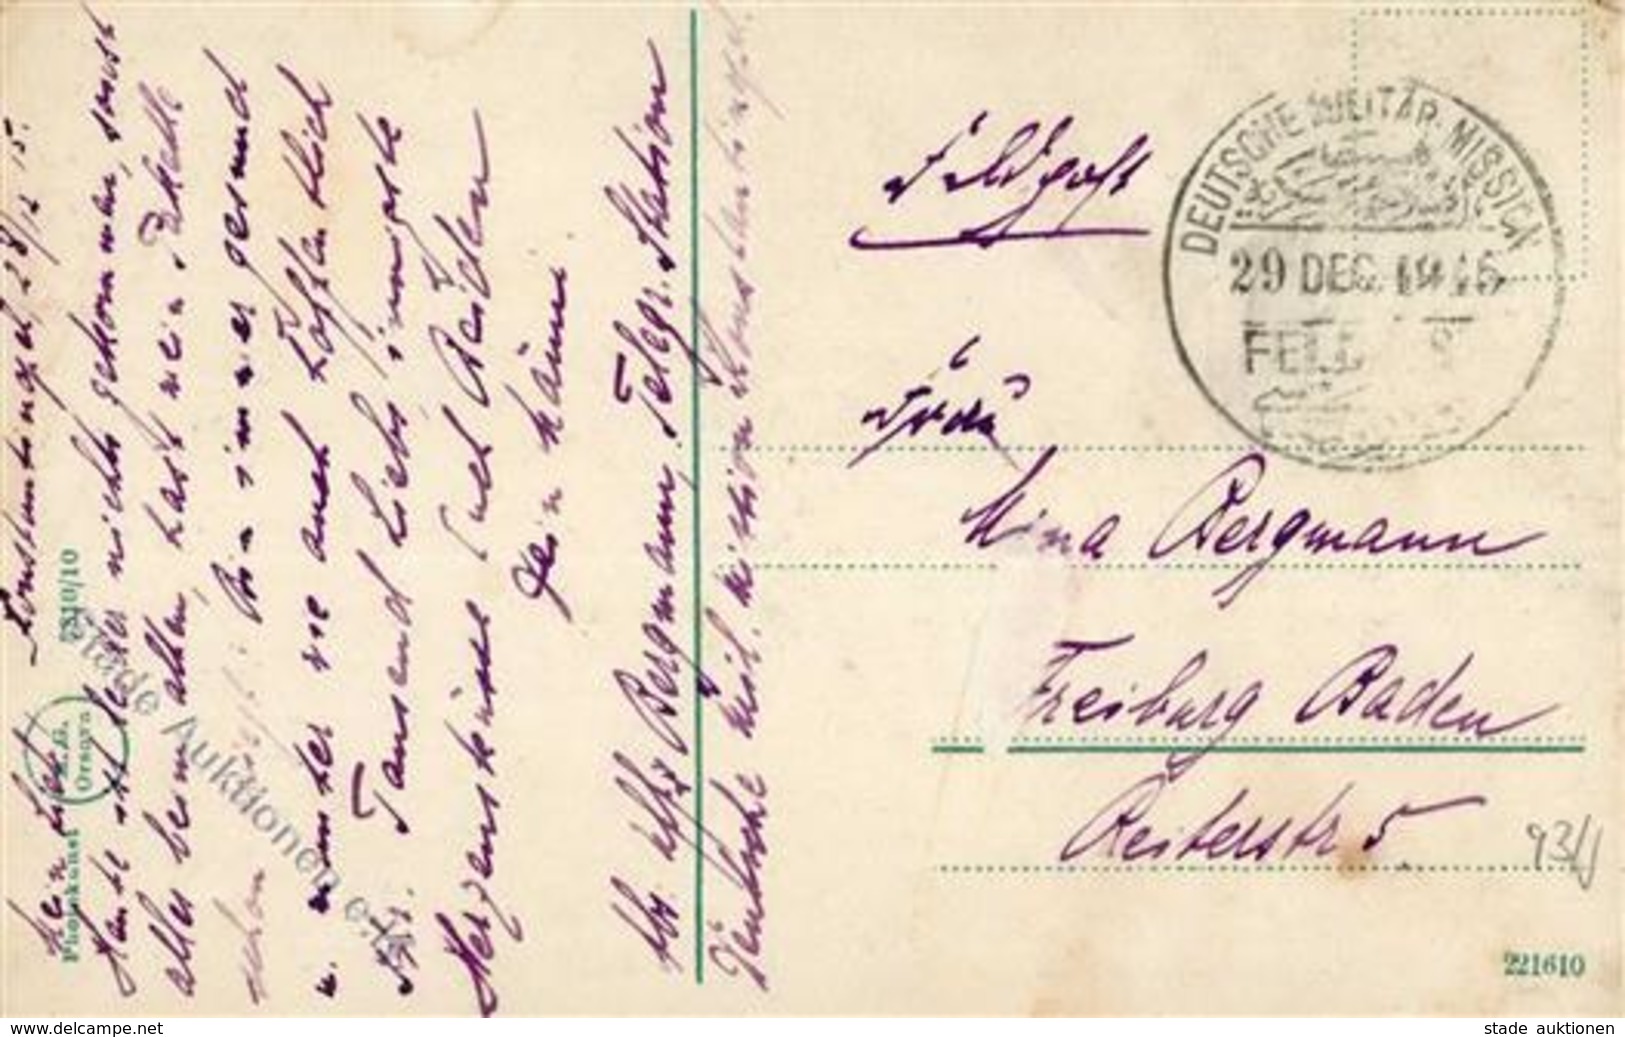 Deutsche Post Türkei Stempel Deutsche Militär Mission 29 Dec 1915 Feldpost I-II - Histoire